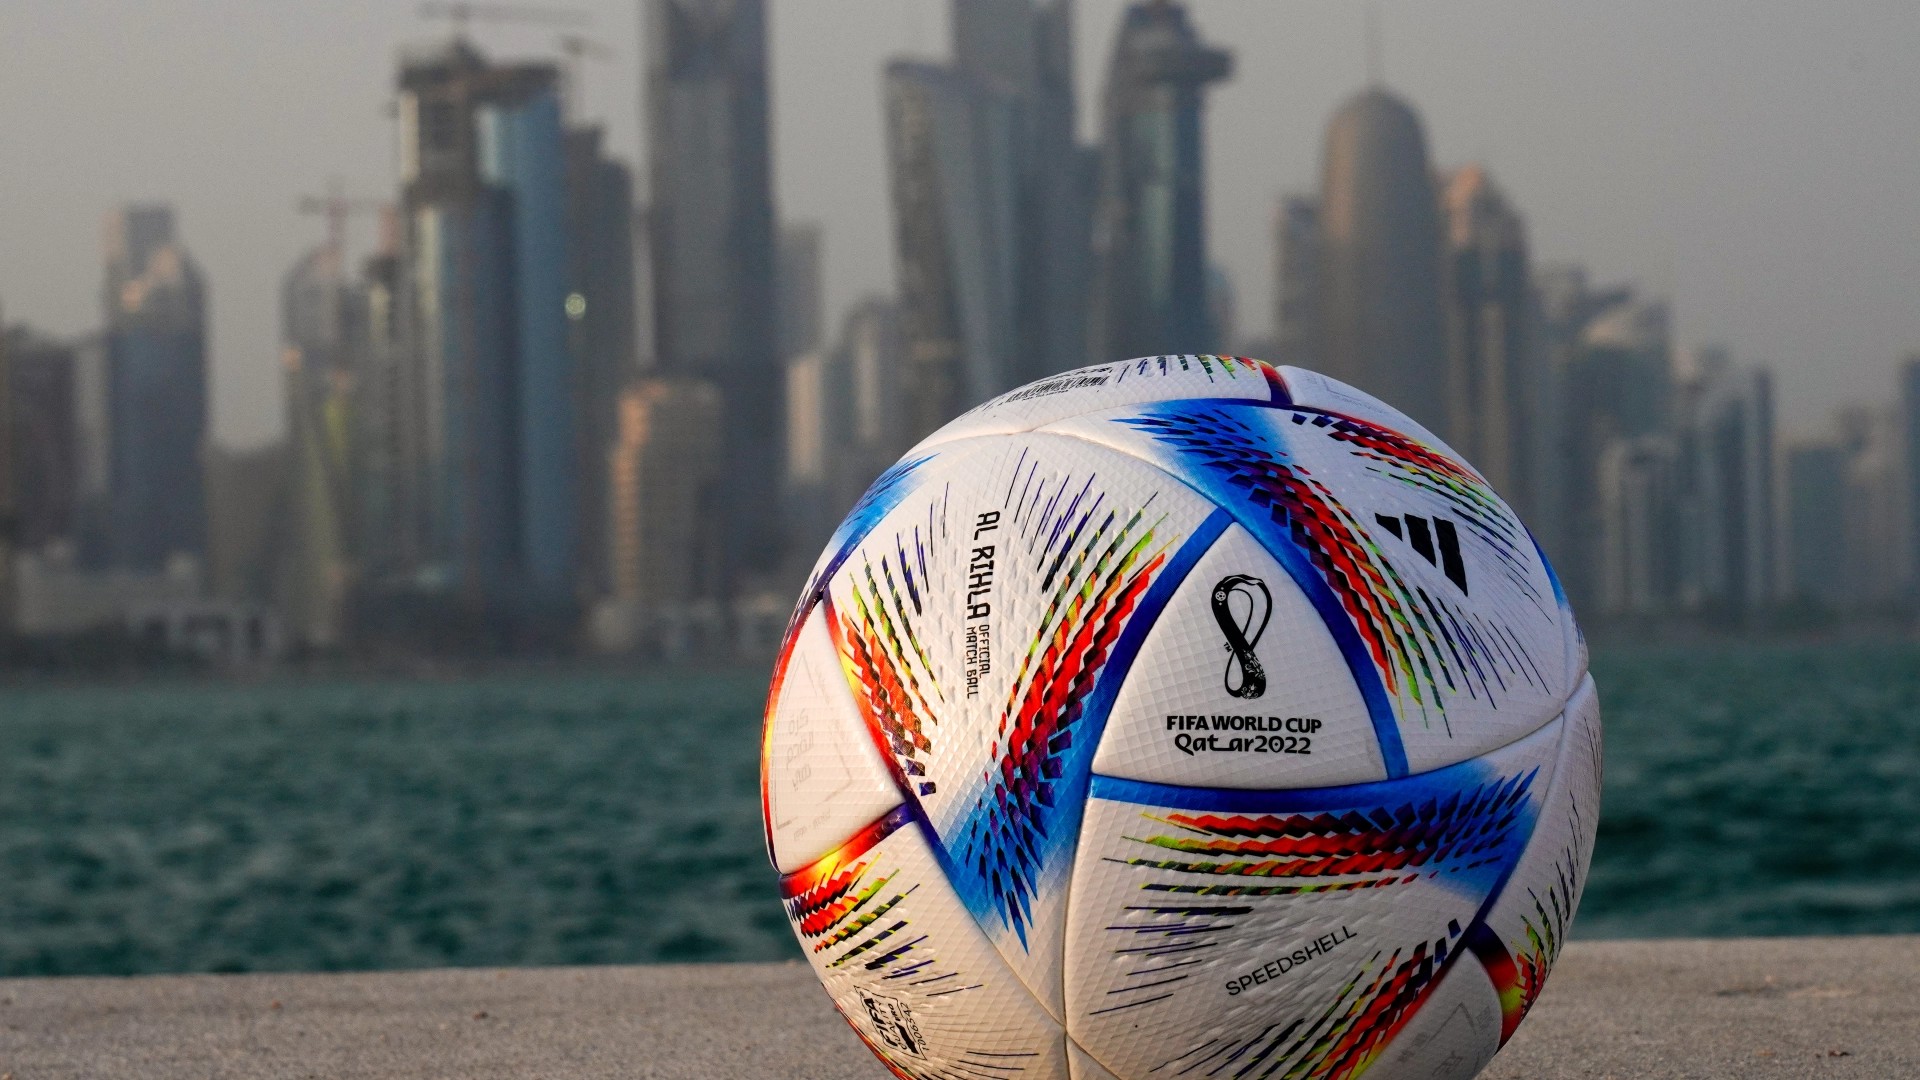 Βγήκε… ο νικητής του Μουντιάλ 2022 στο Κατάρ